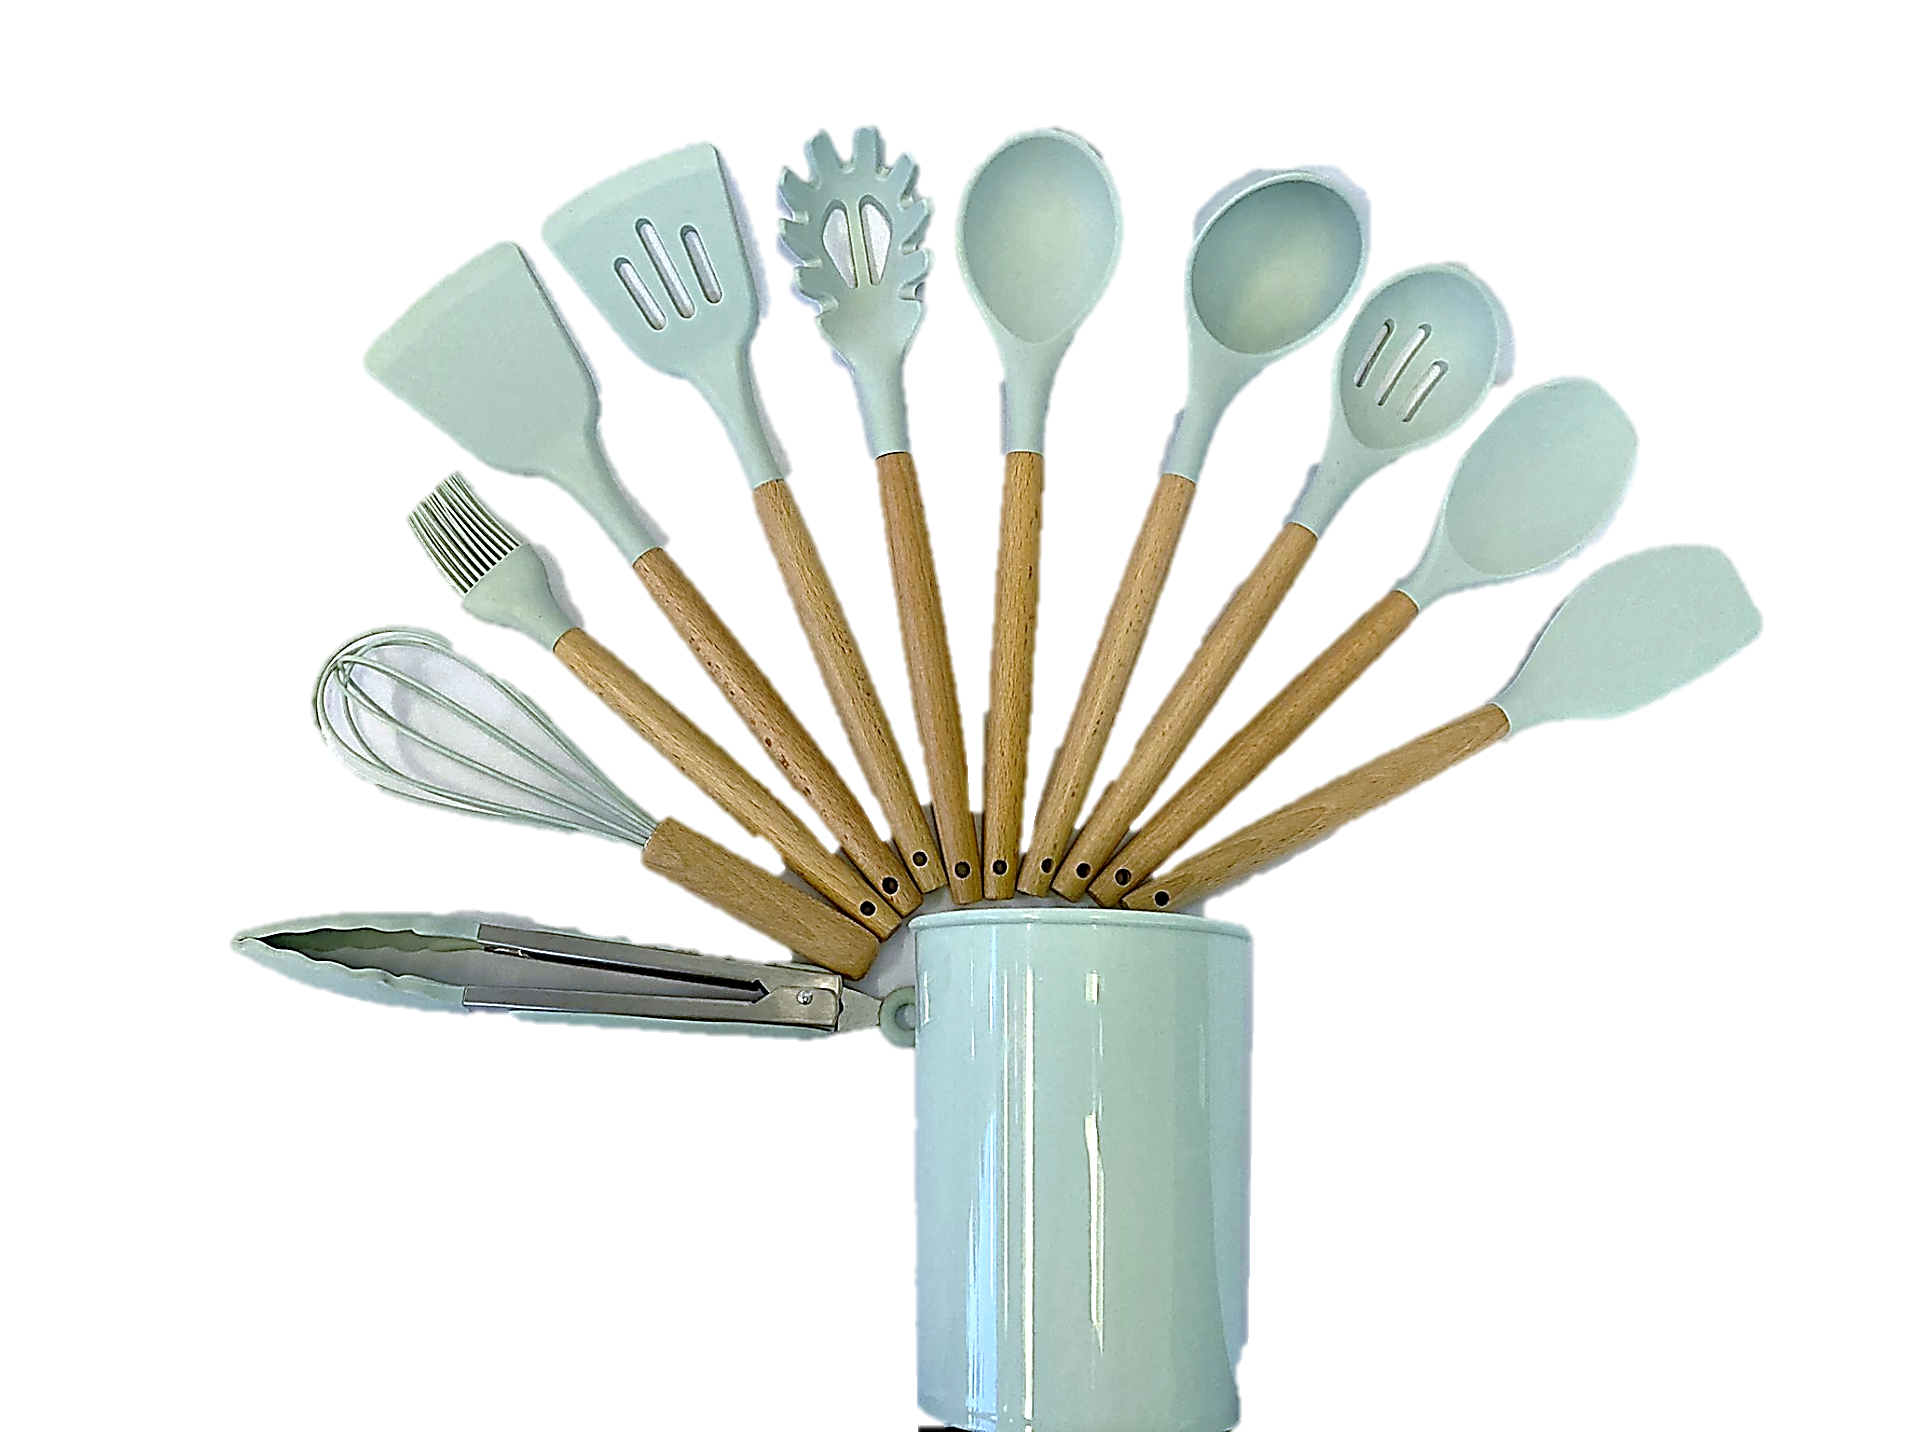 Rorence Utensilios de cocina de silicona Juego de utensilios de cocina: 12  piezas de utensilios de c…Ver más Rorence Utensilios de cocina de silicona